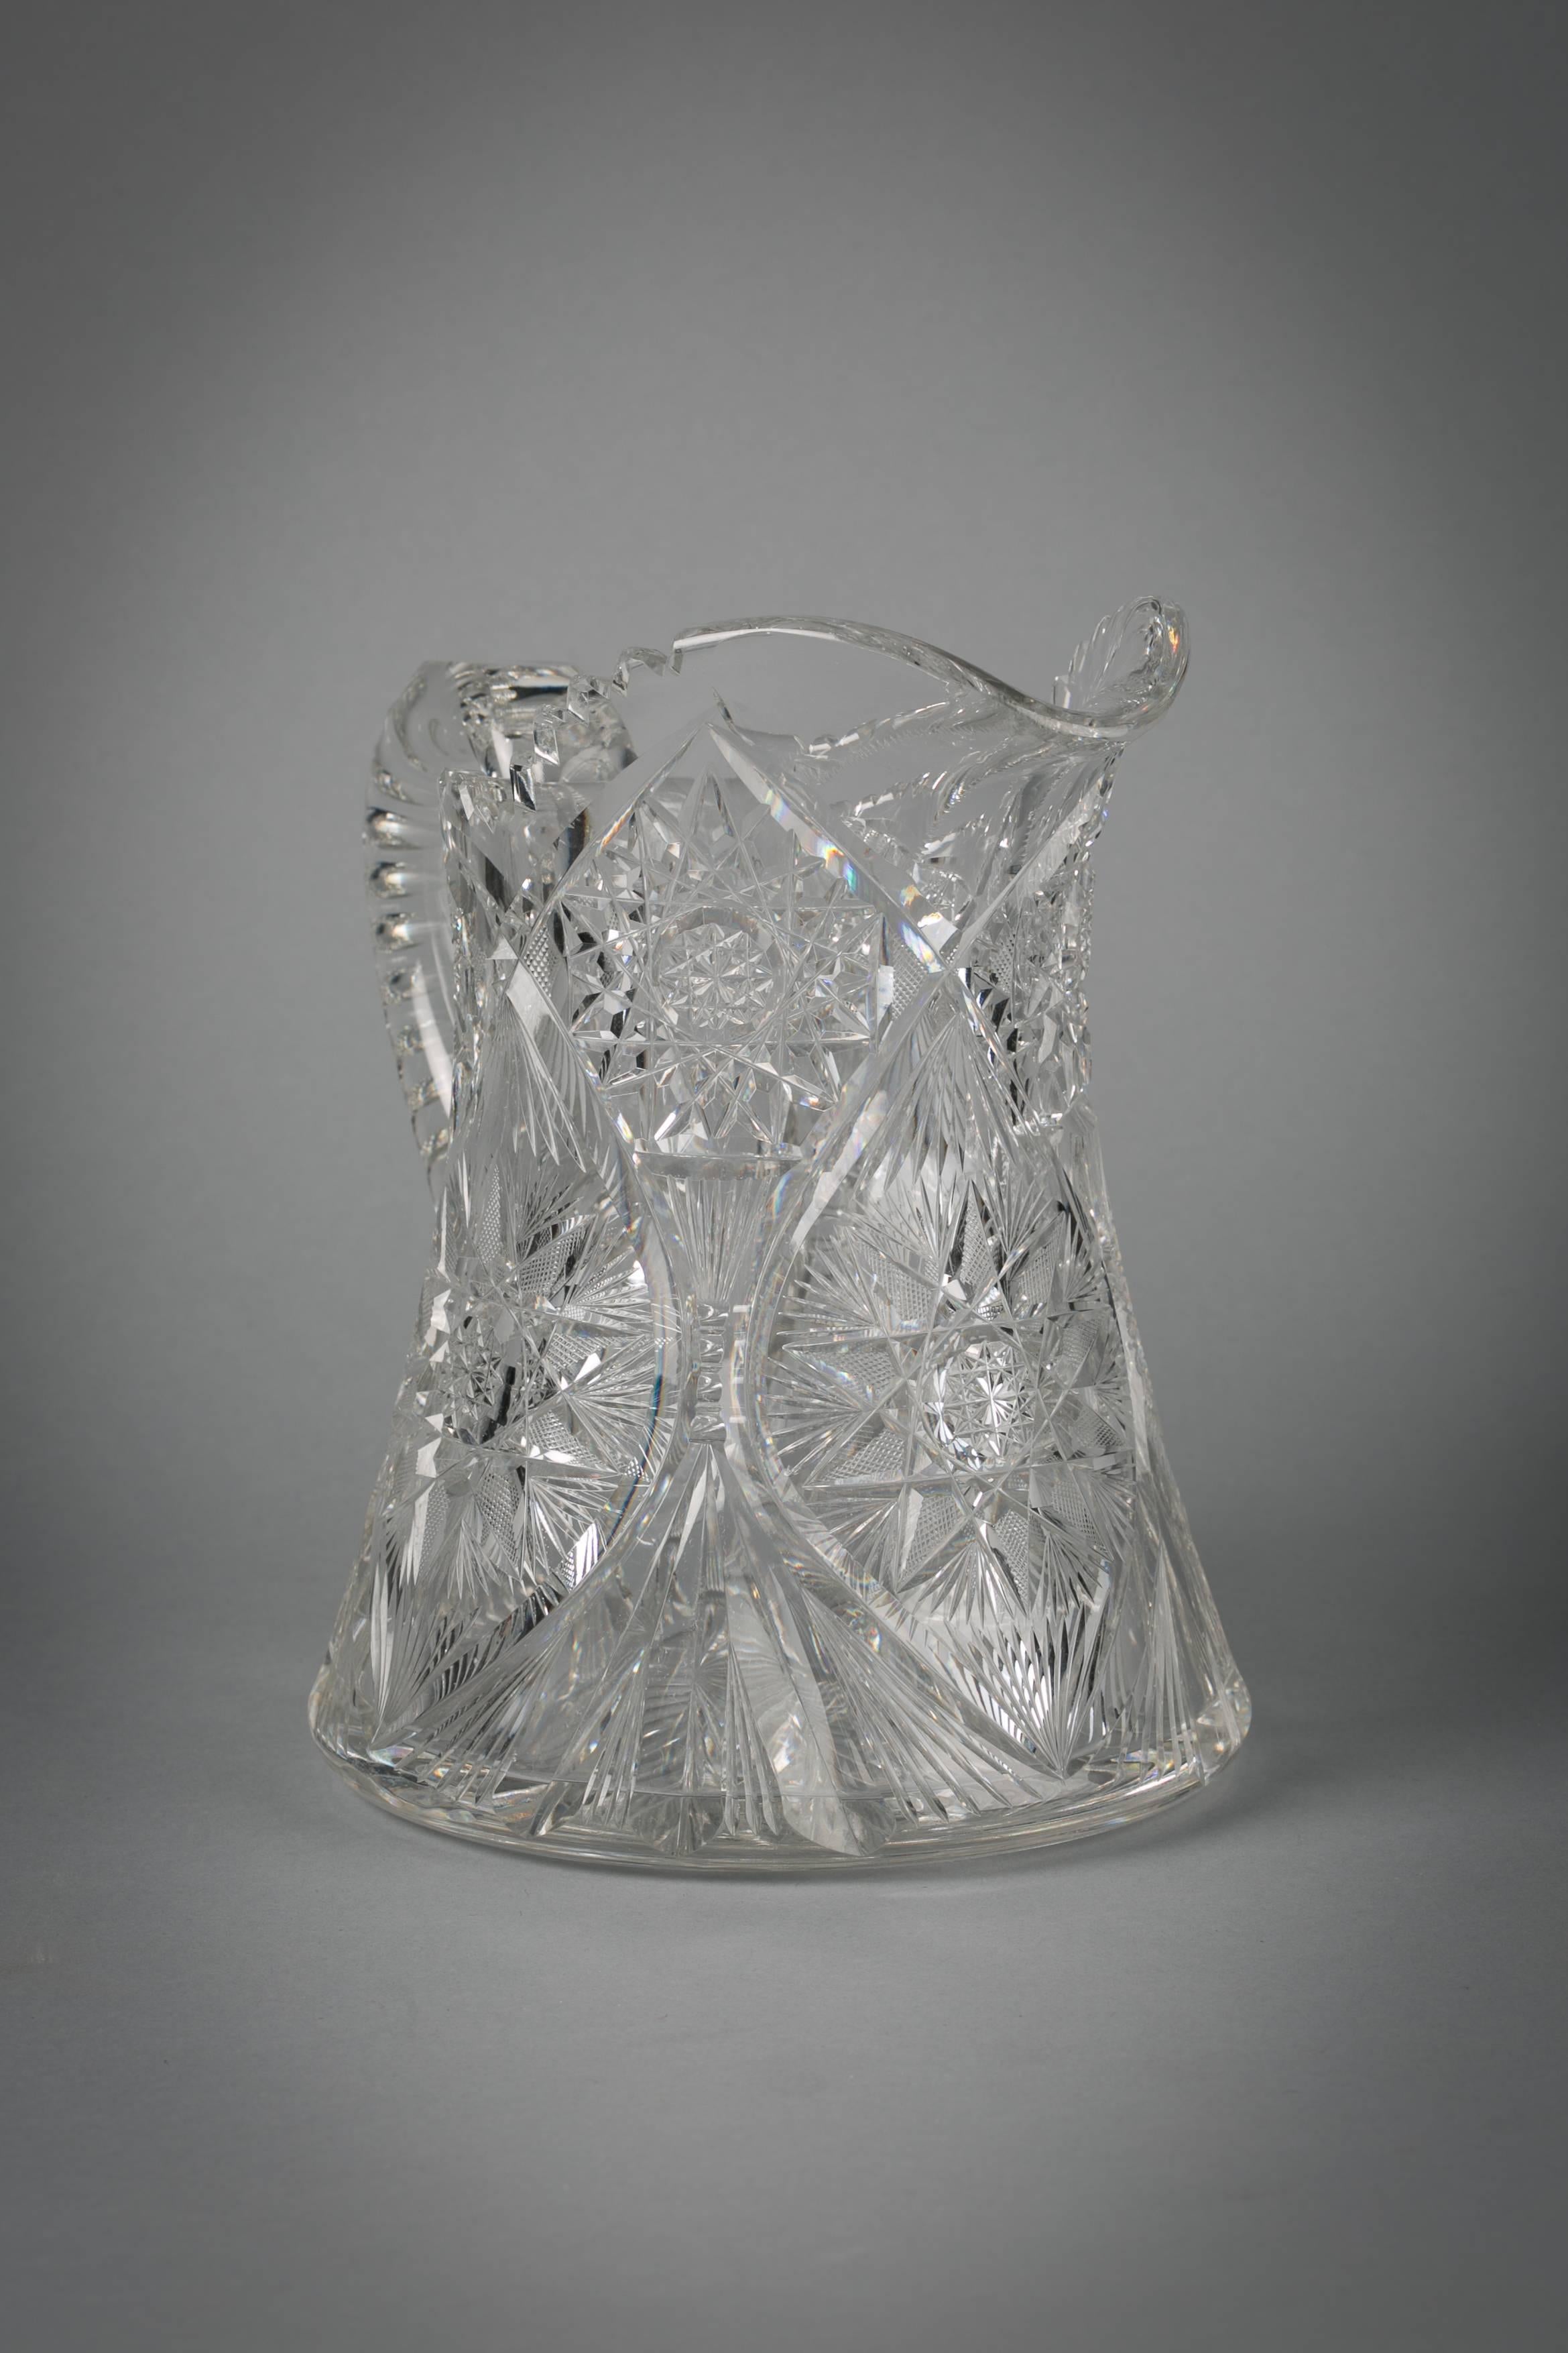 American brilliant cut glass pitcher, circa 1900.